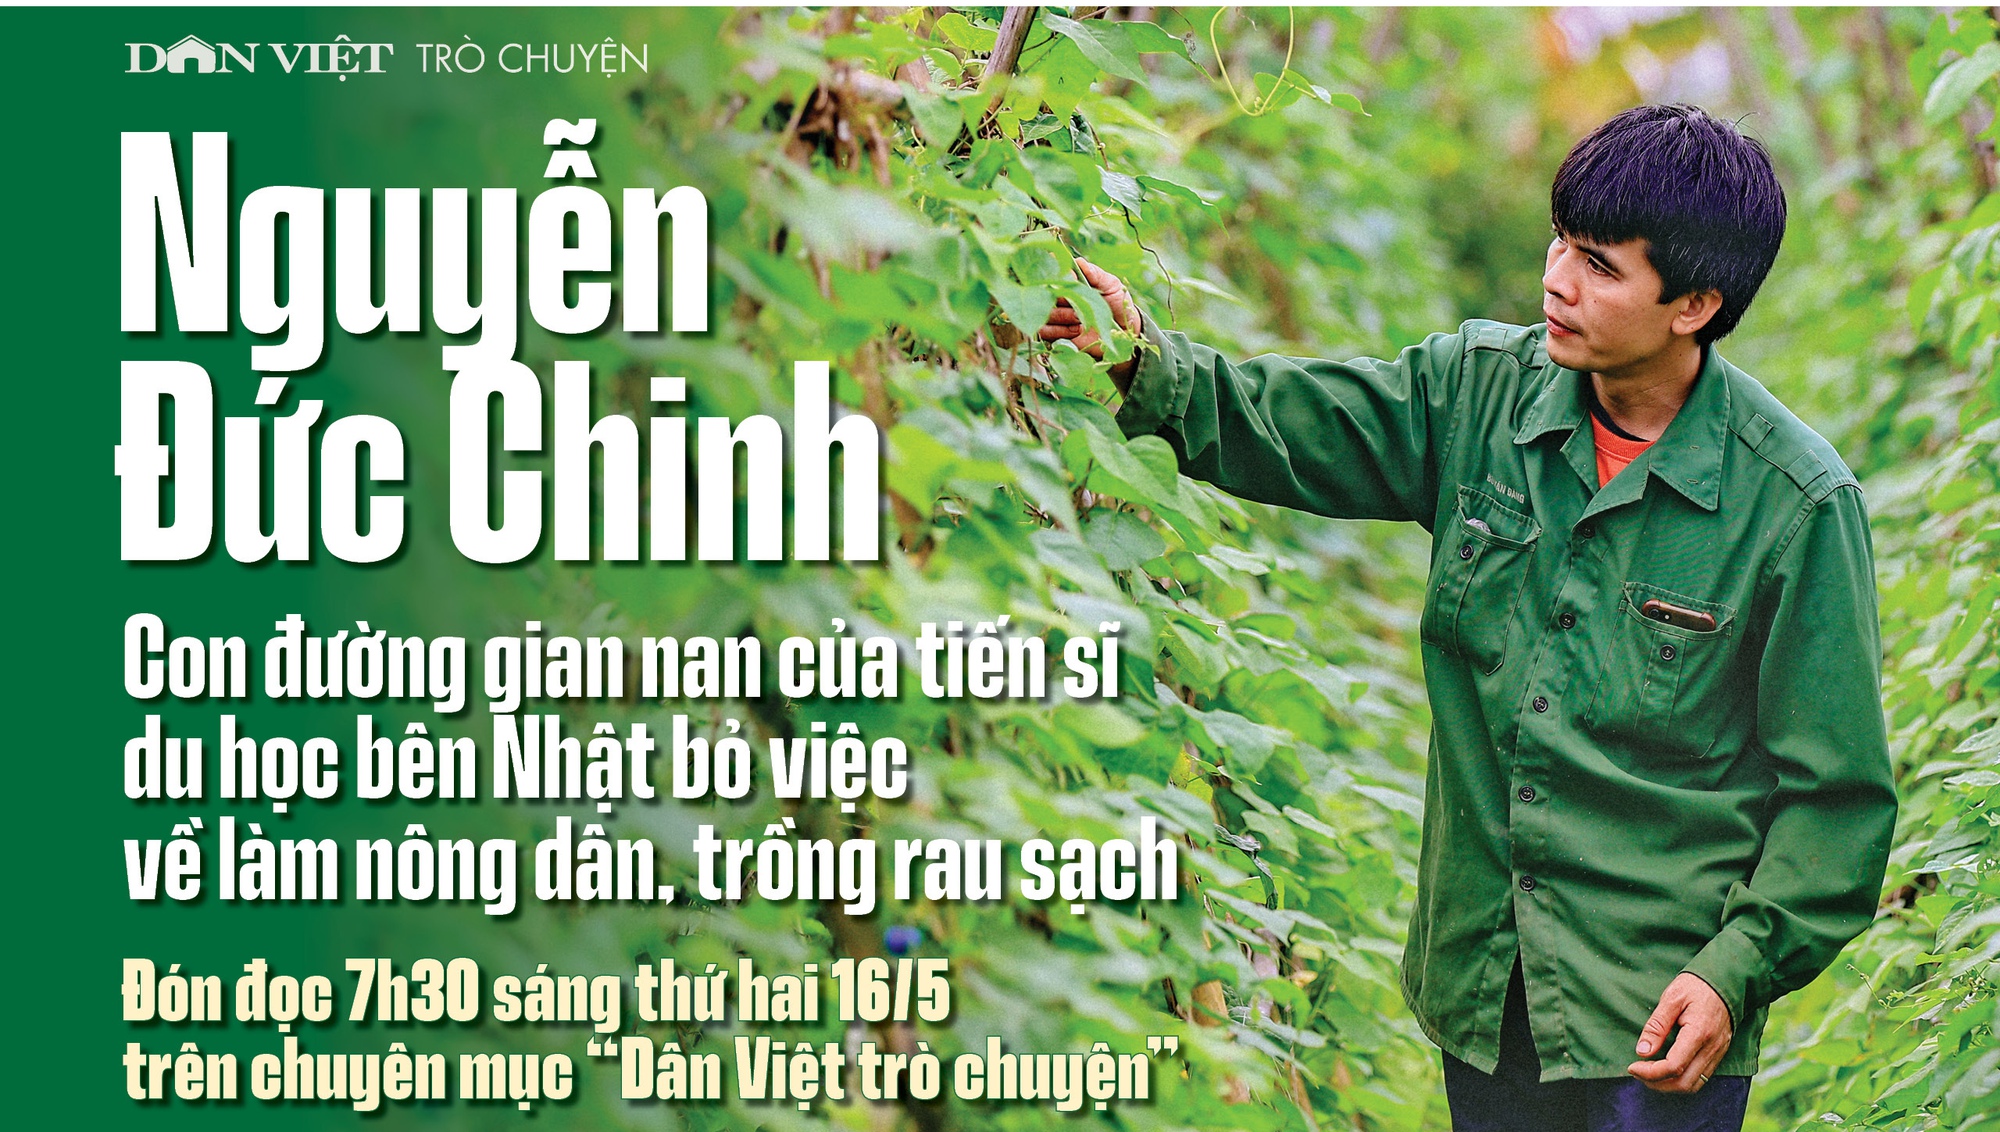 Đón đọc Dân Việt trò chuyện 7h30 thứ Hai (16/5): Tiến sĩ du học bên Nhật bỏ việc về làm nông dân, trồng rau sạch - Ảnh 1.